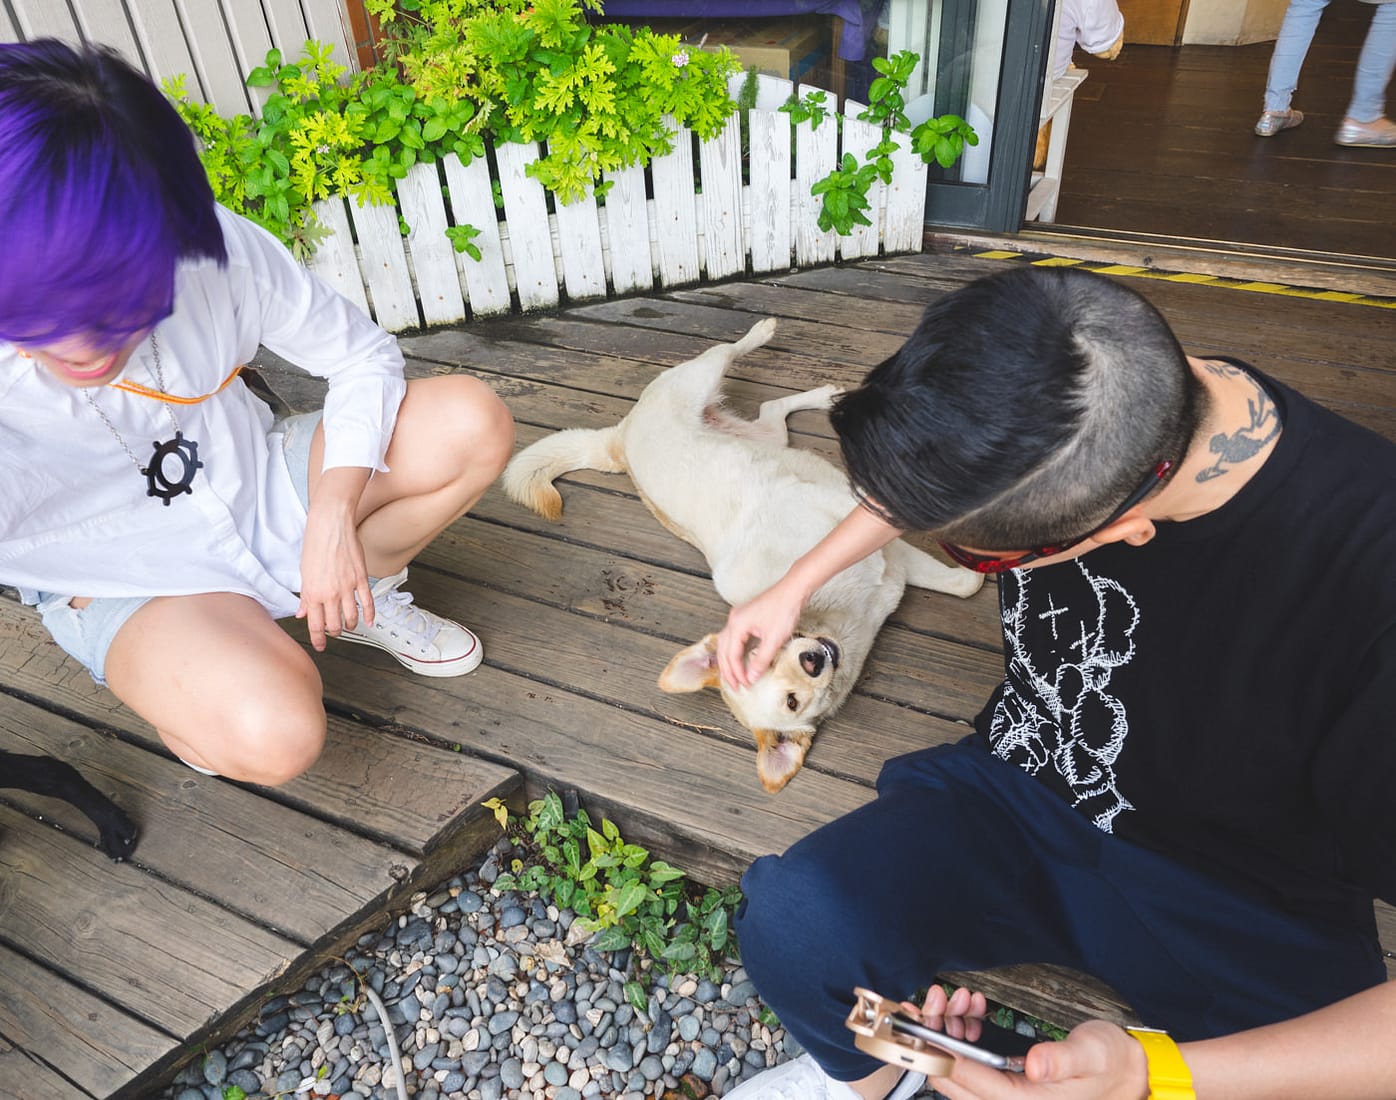 Taiwan - Qingjing - E & A playing with dogs